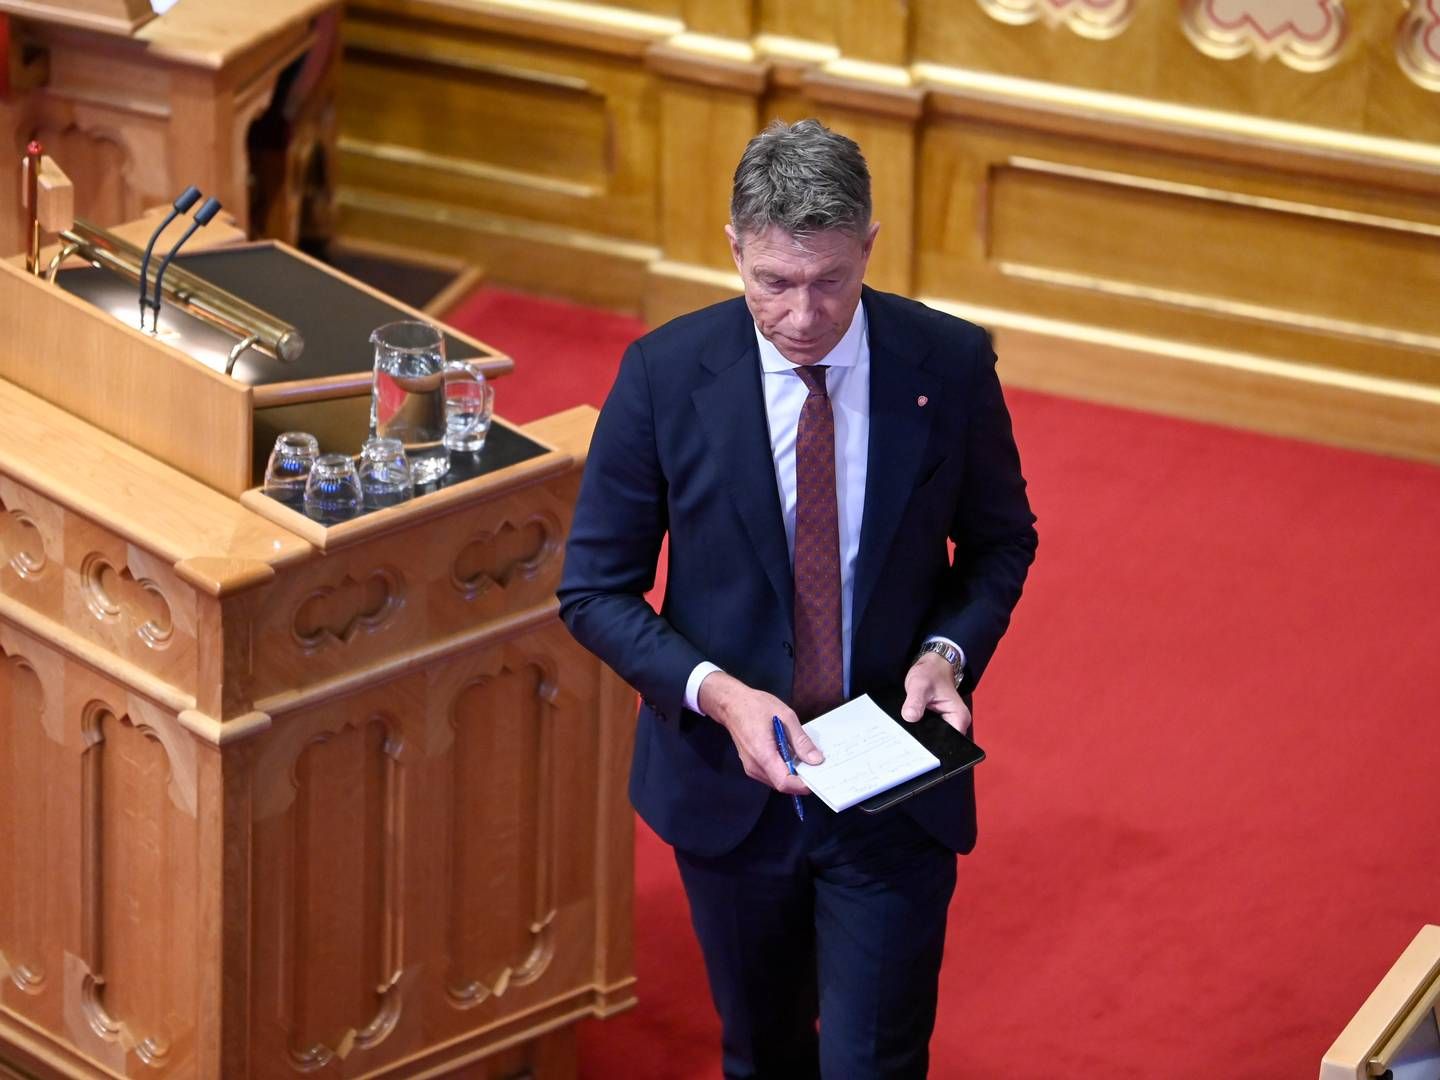 HAR SVART OPPOSISJONEN: Olje- og energiminister Terje Aasland blir utfordret av Rødt og SV om Fosen-saken. | Foto: Annika Byrde / NTB